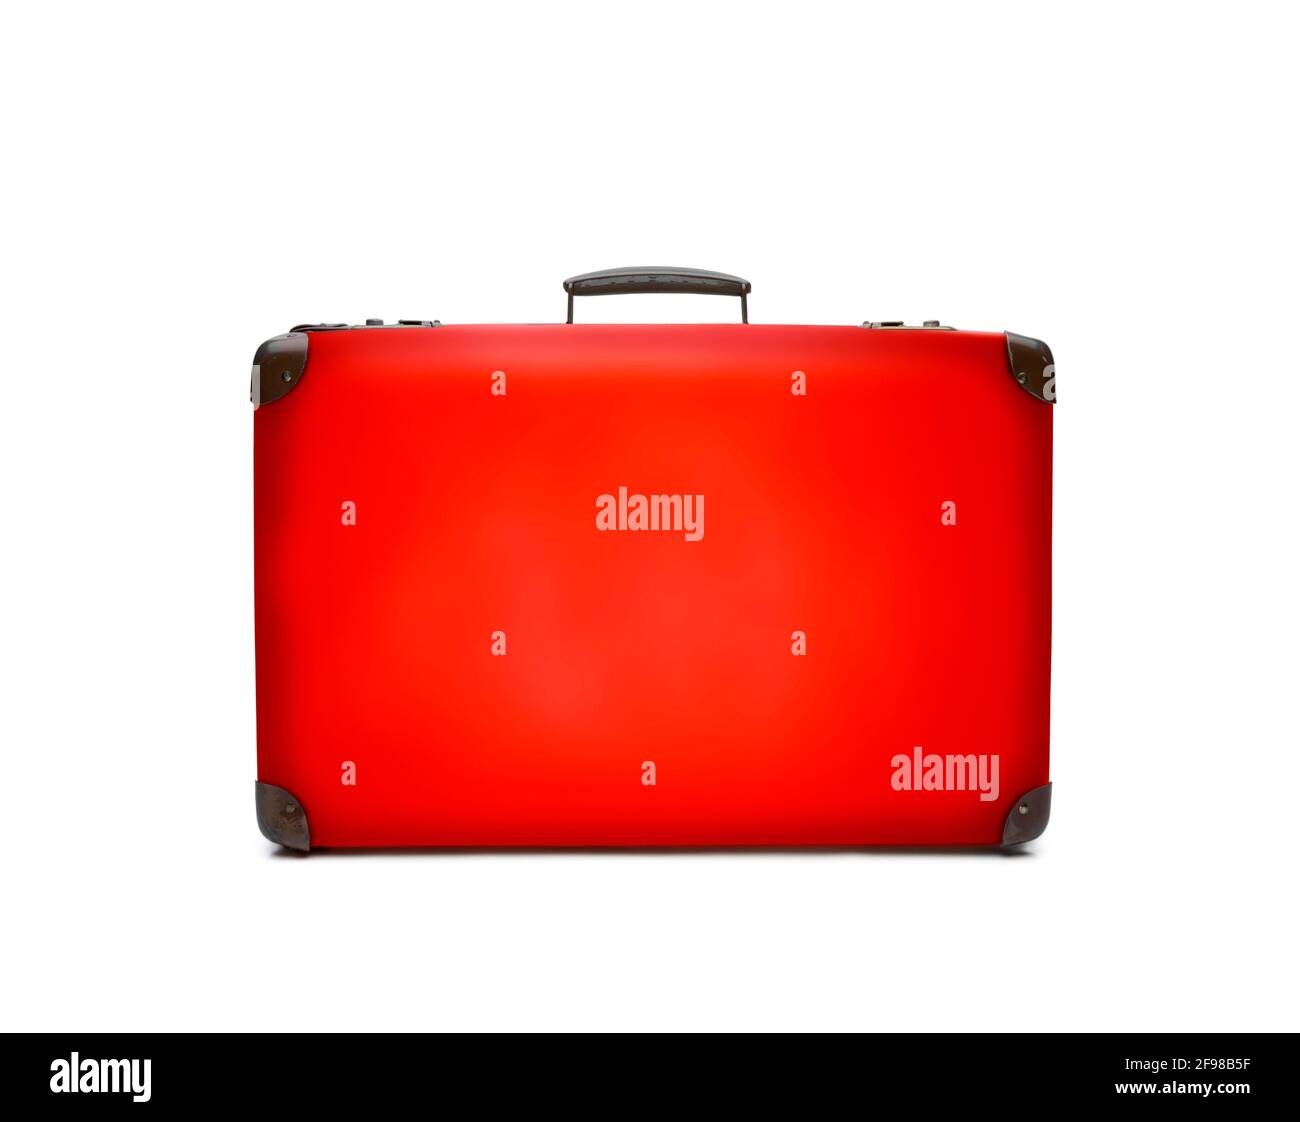 Valigia in stile retrò rossa su sfondo bianco Foto Stock